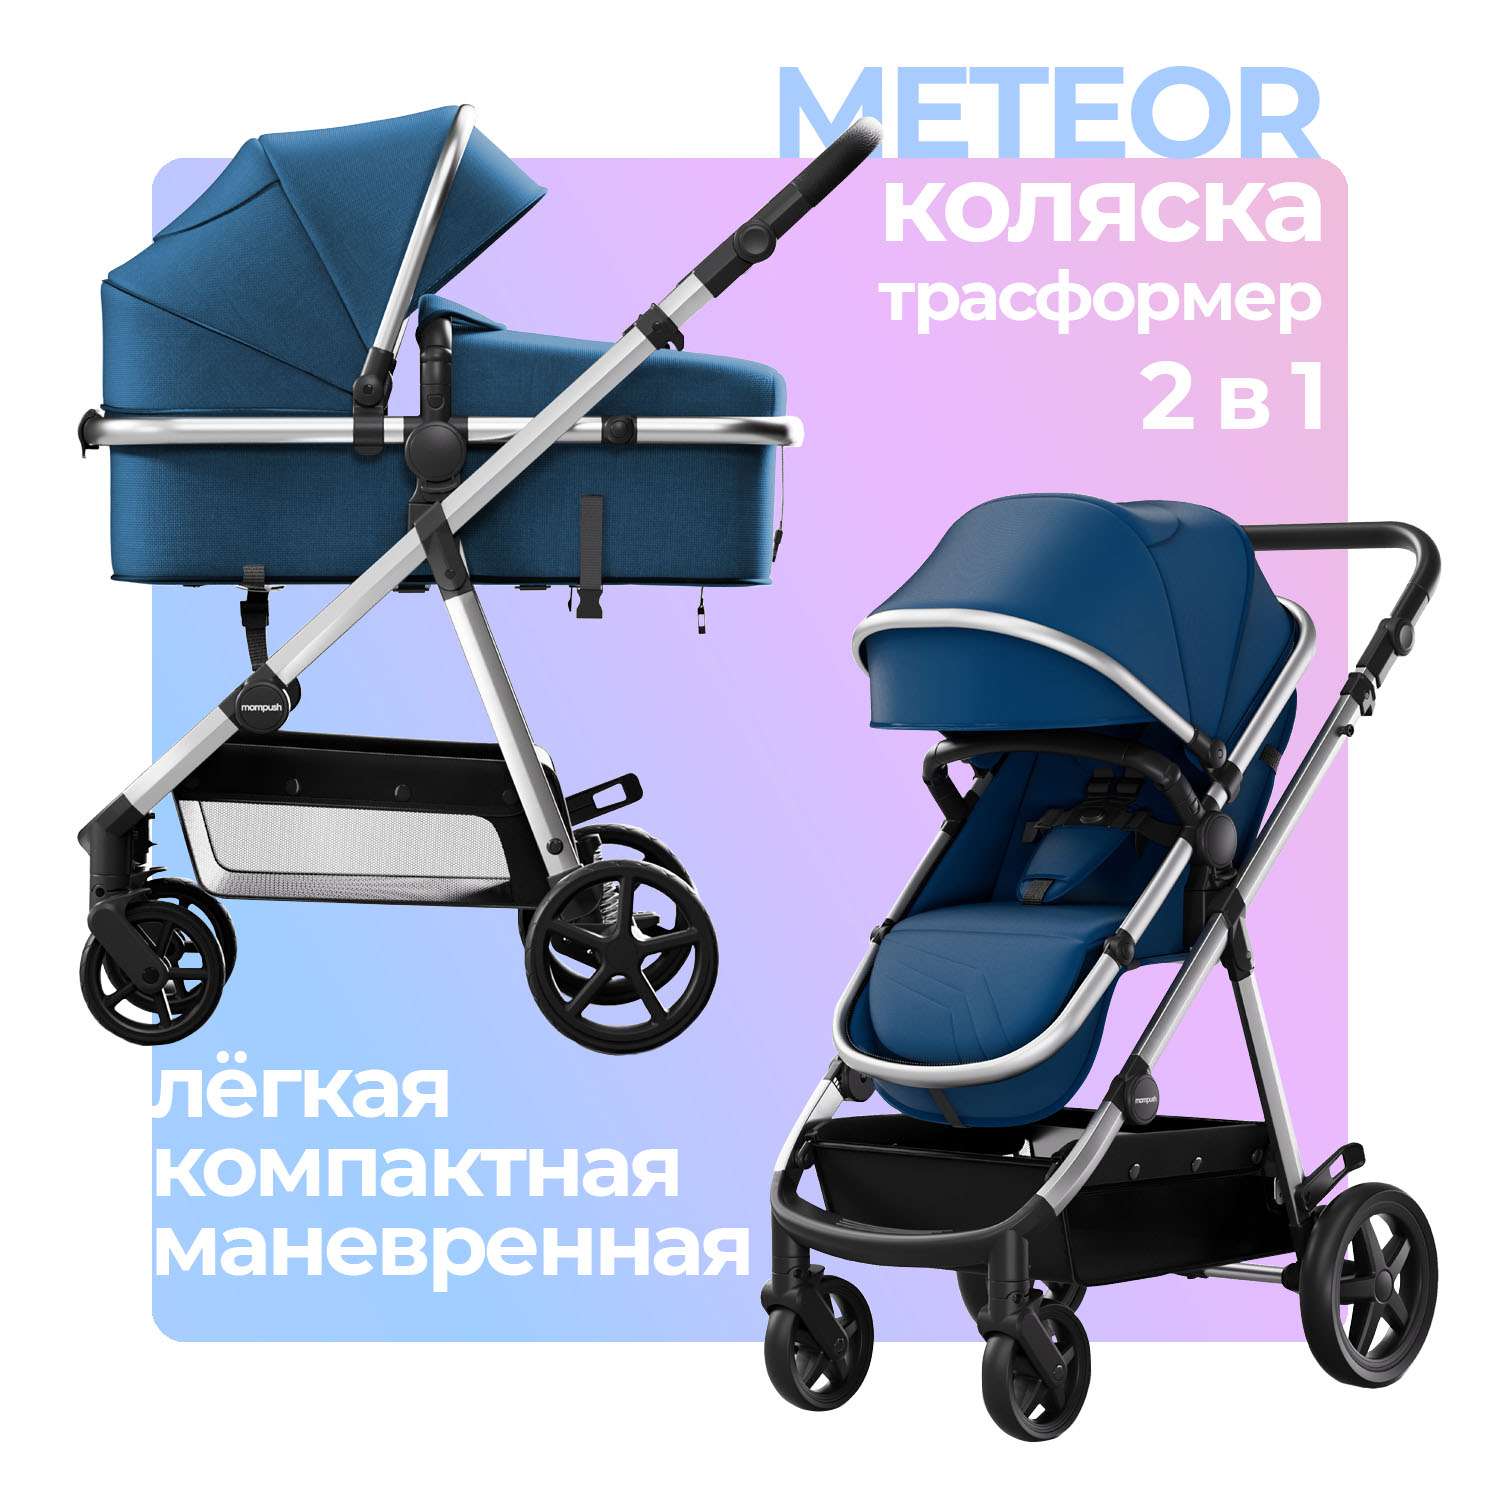 Коляска для новорожденных 2в1 Mompush Meteor всесезонная трансформер дождевик в комплекте - фото 1